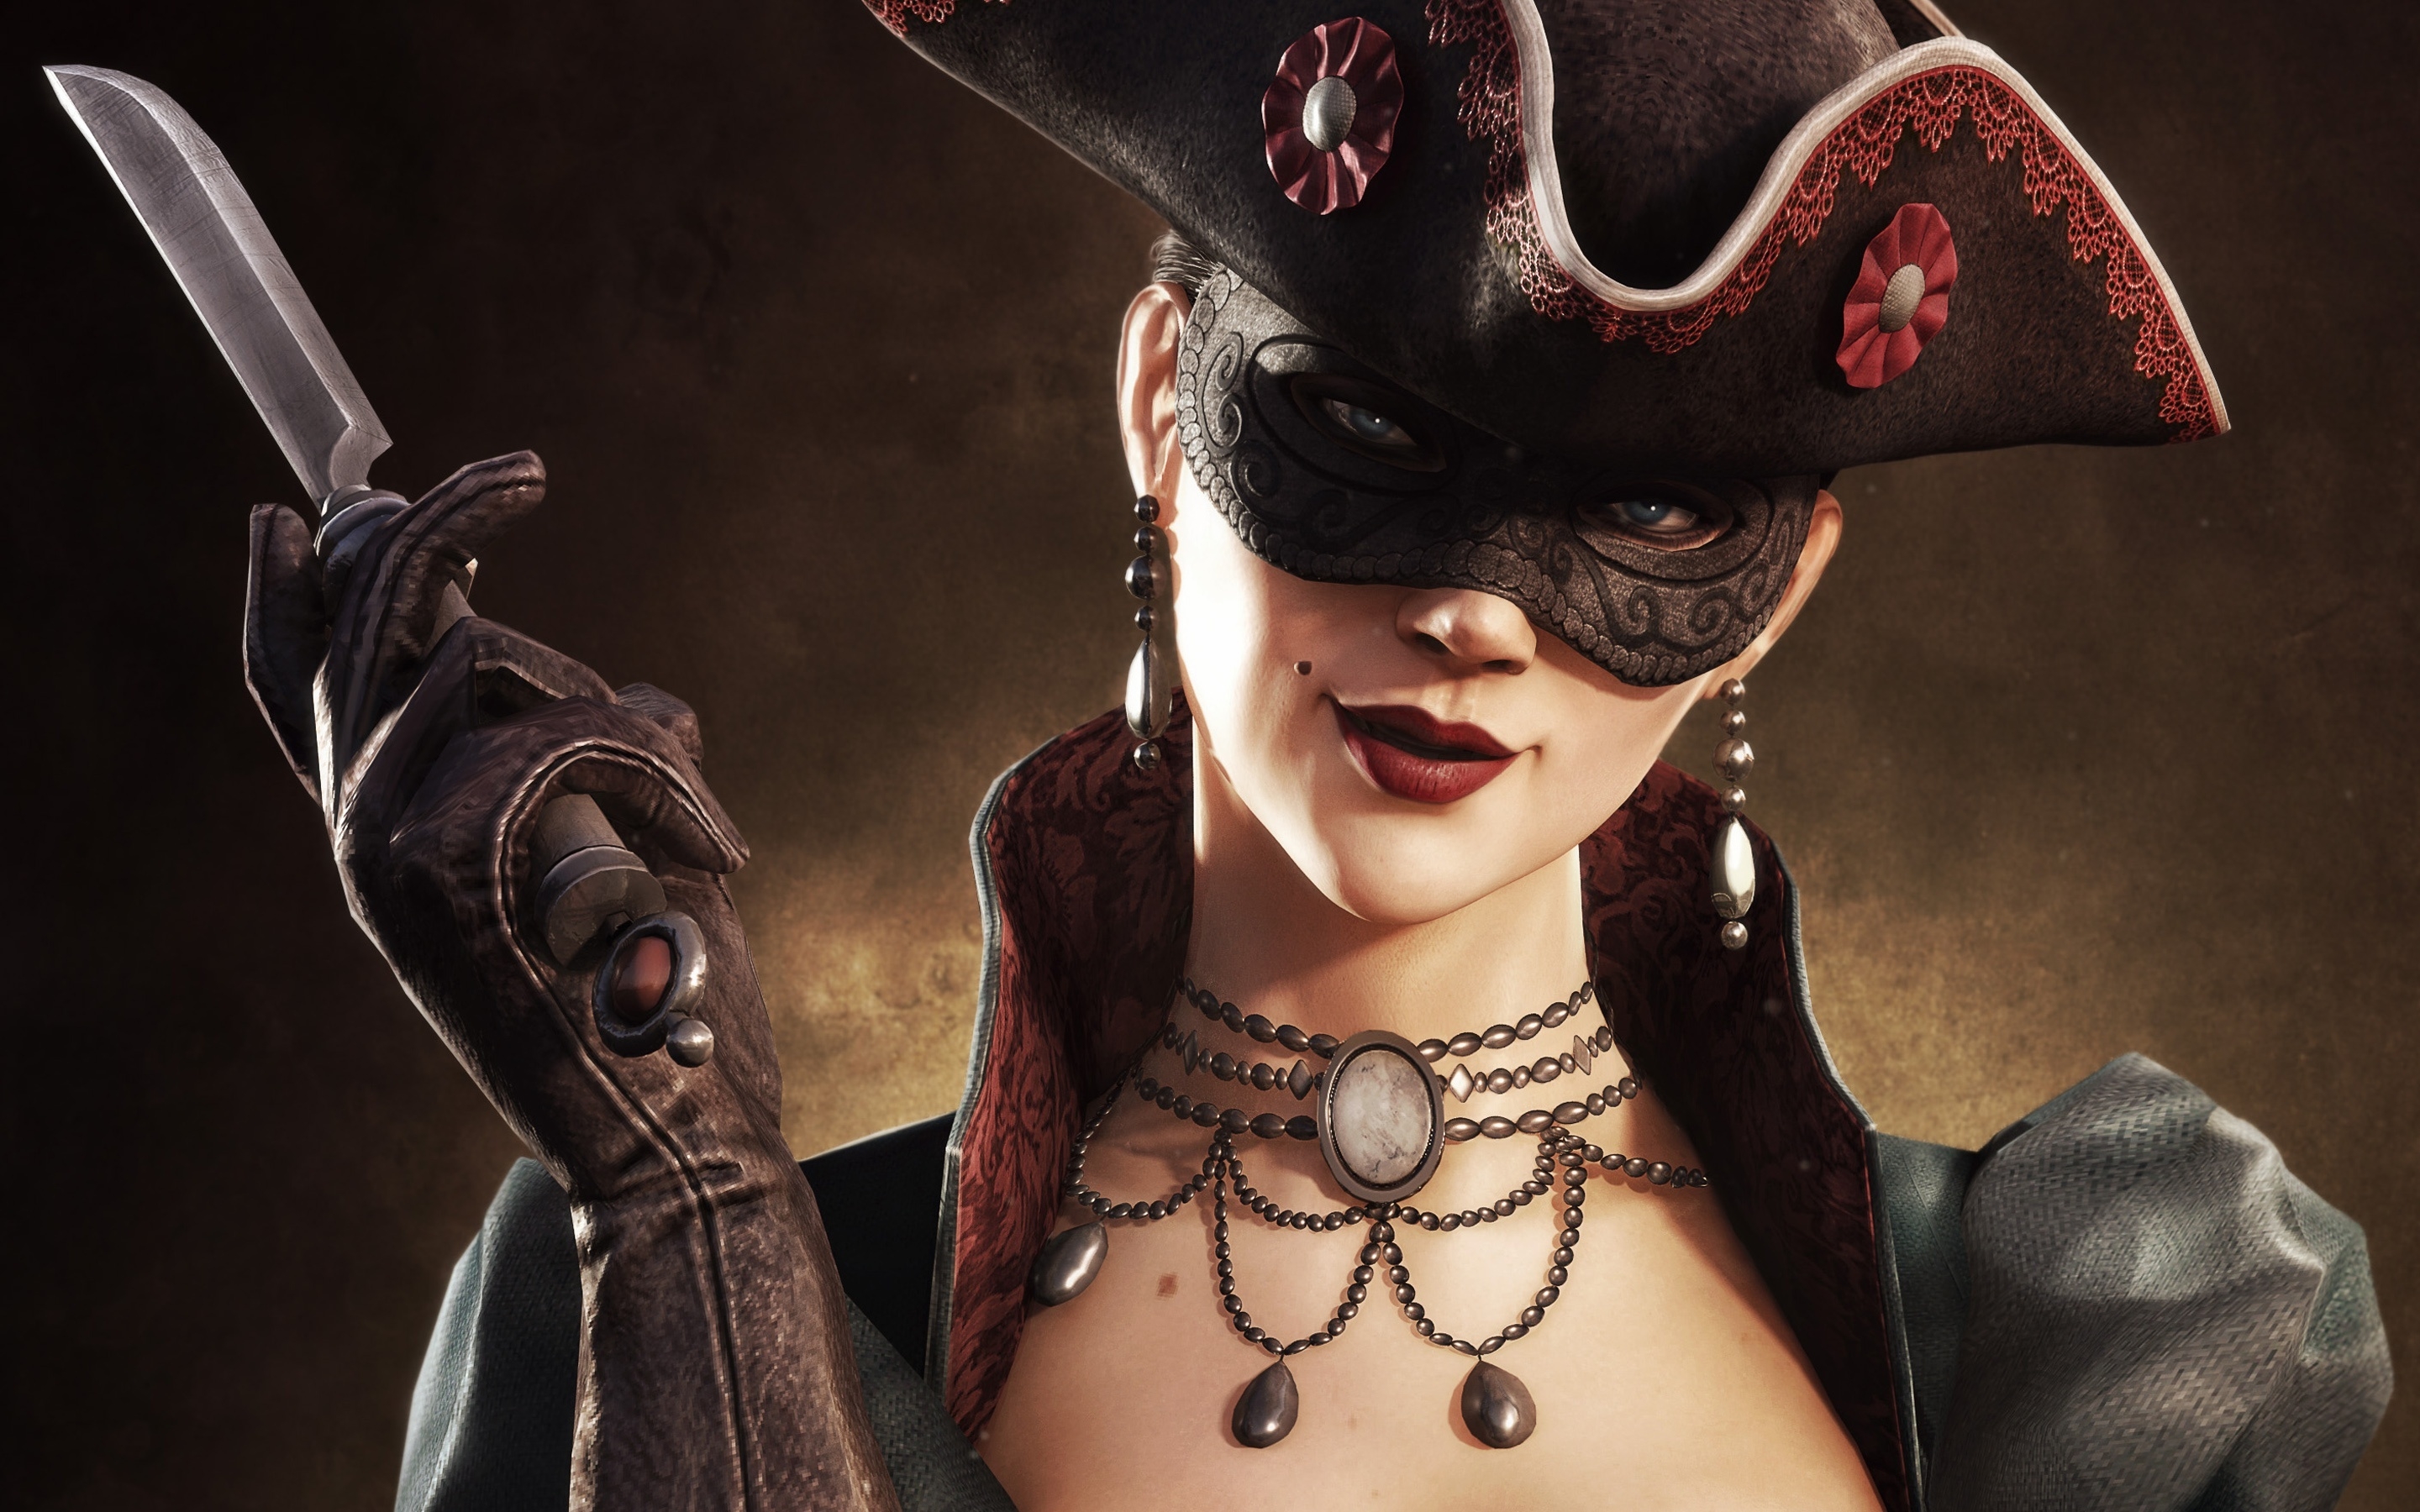 Girl from Assassins Creed 4 HD Wallpaper - WallpaperFX